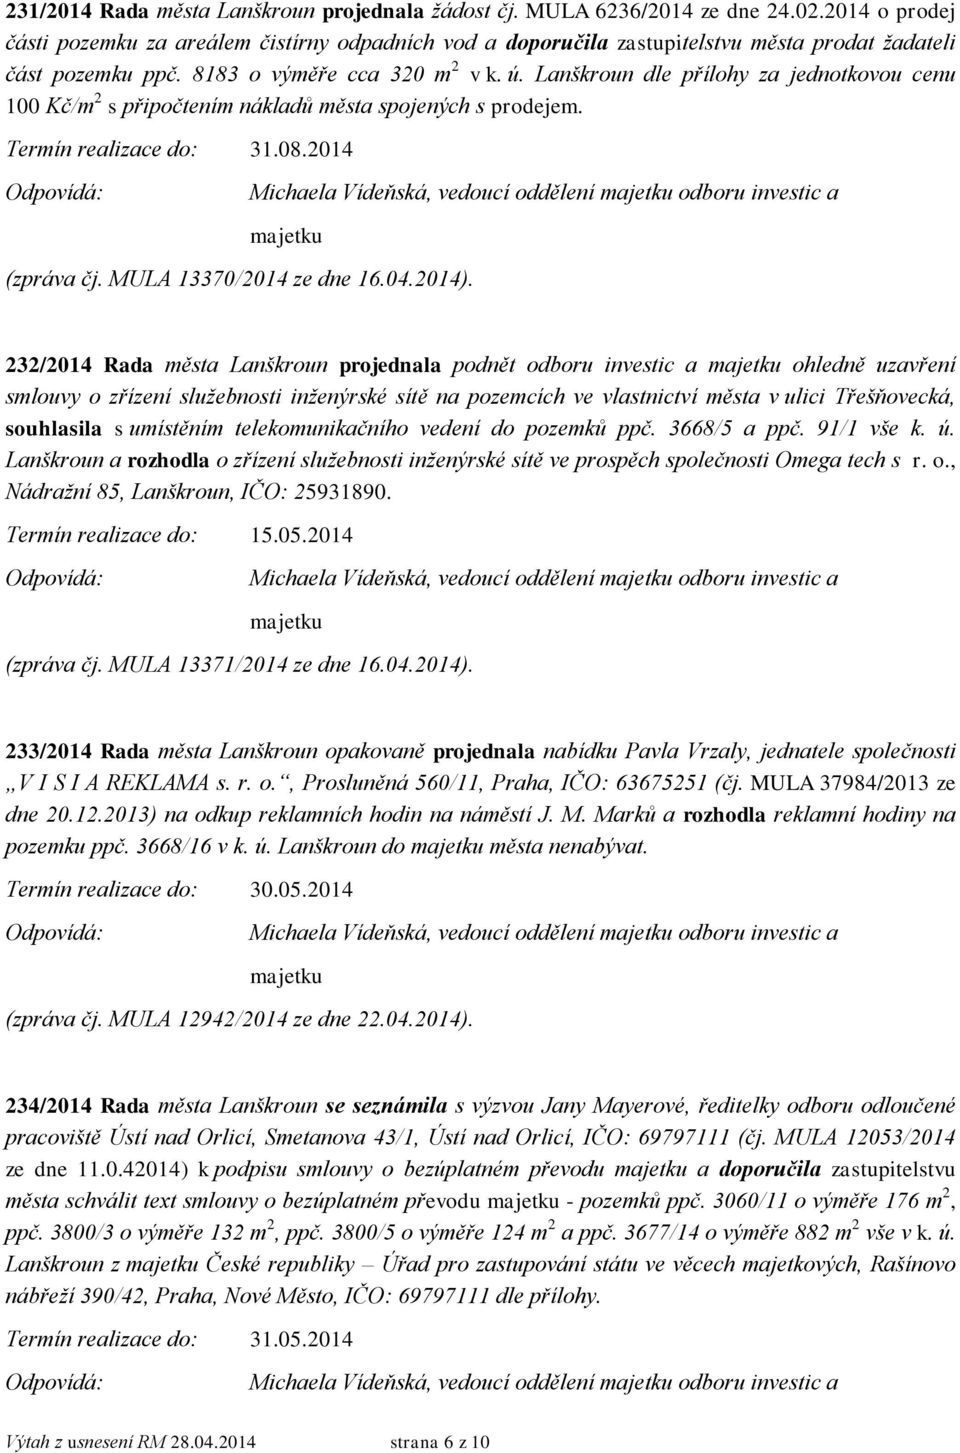 Lanškroun dle přílohy za jednotkovou cenu 100 Kč/m 2 s připočtením nákladů města spojených s prodejem. Termín realizace do: 31.08.2014 (zpráva čj. MULA 13370/2014 ze dne 16.04.2014).